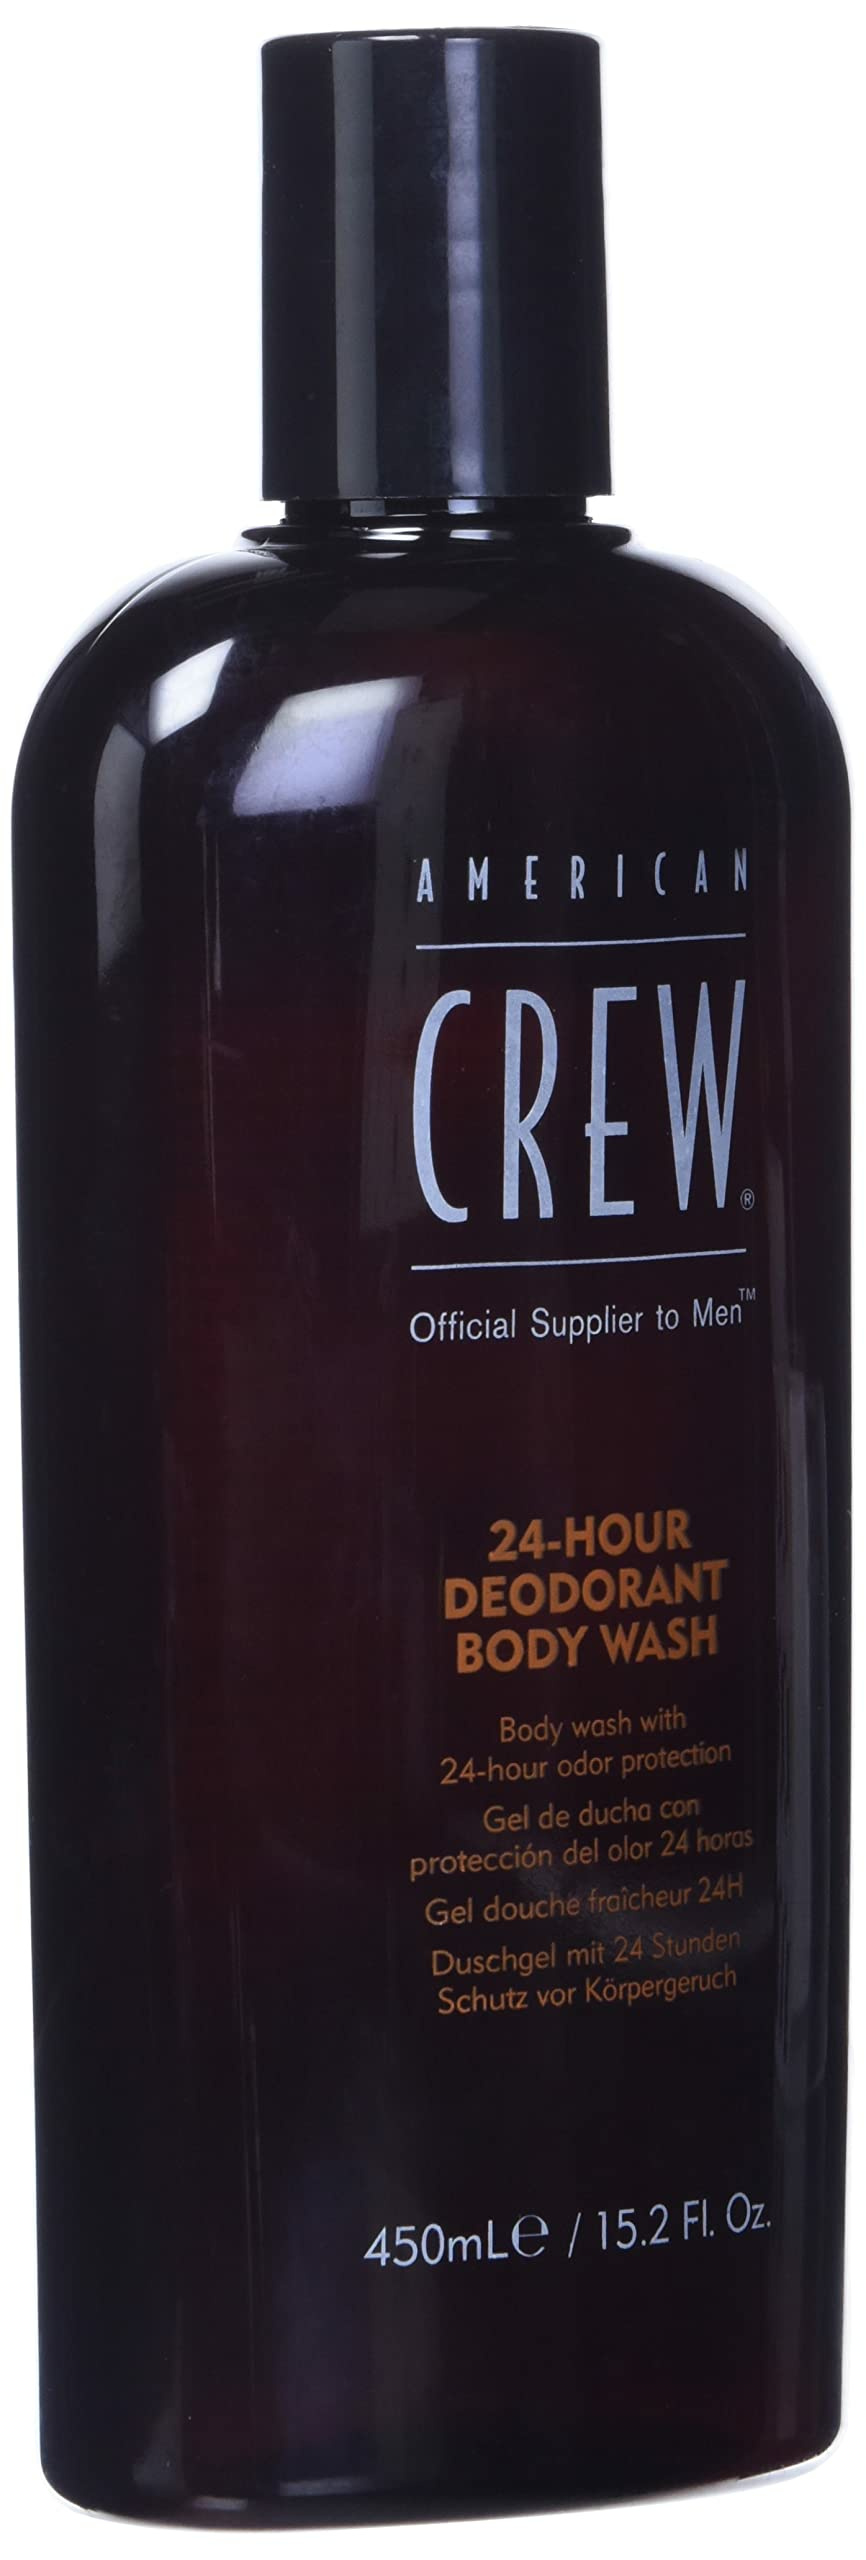 American Crew 24HR Deo. Body Wash 450ml